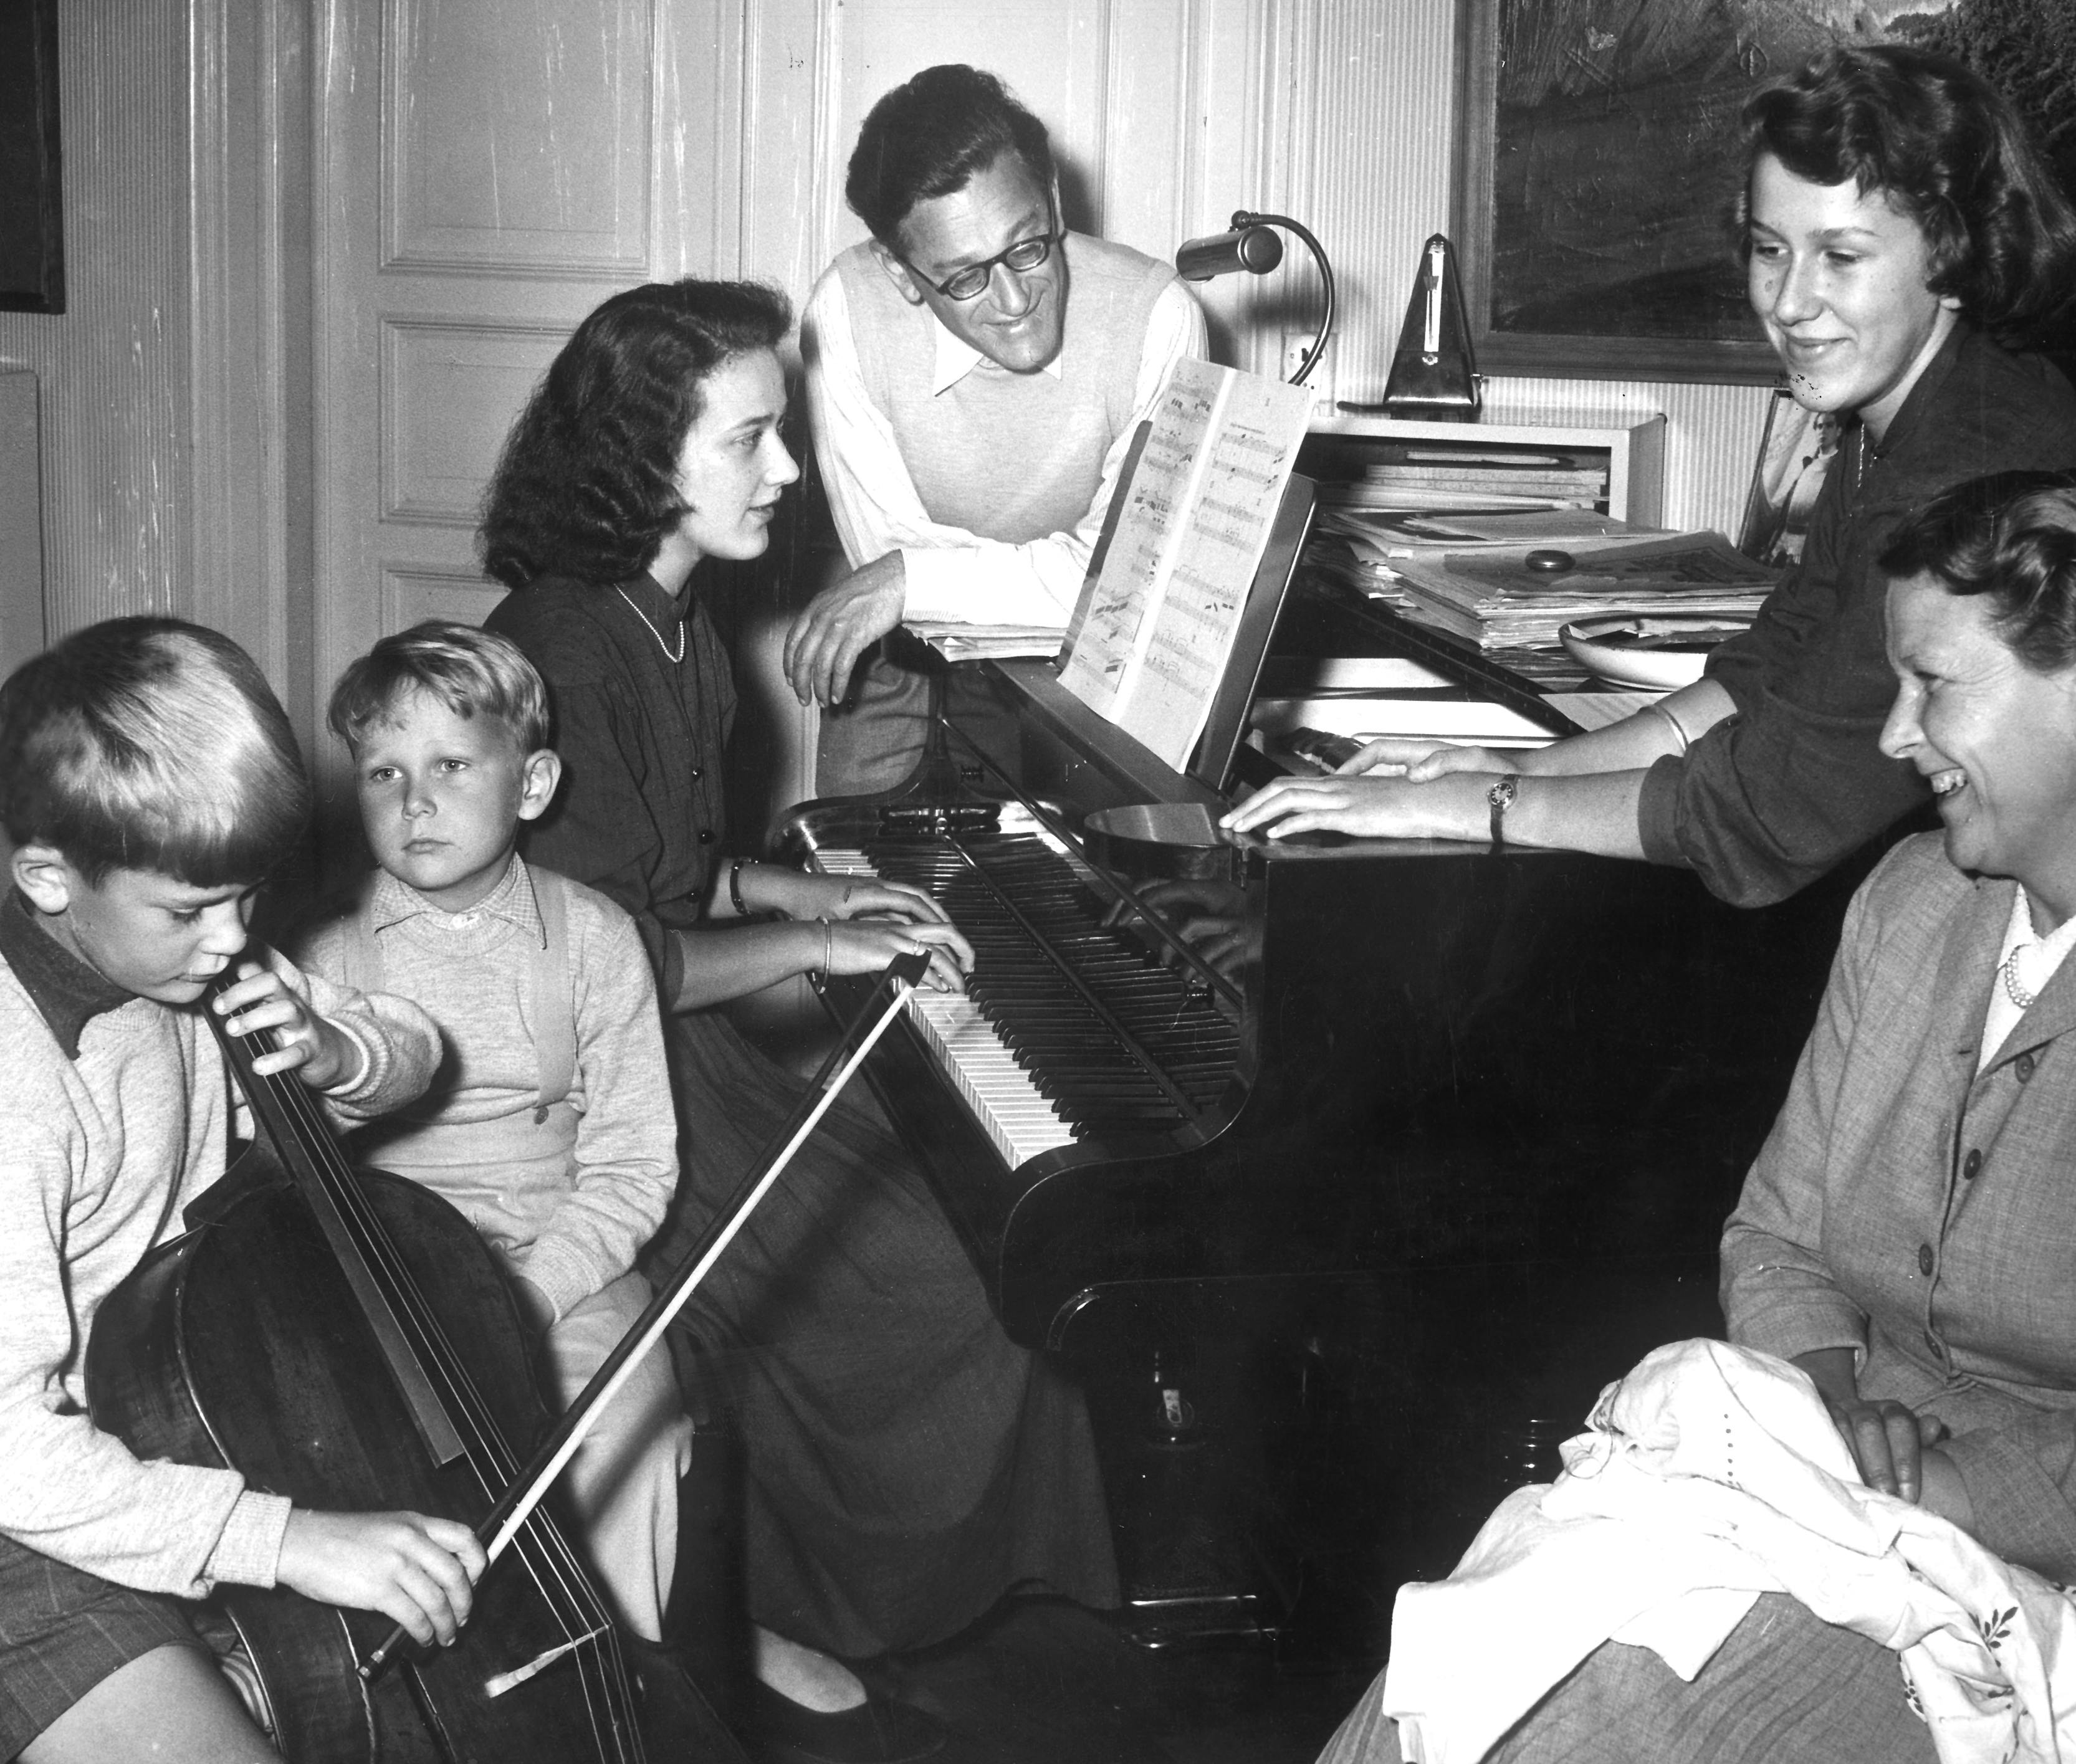 Komponisten Herman David Koppel med hele familien omkring sig og flygelet. Fra venstre; Thomas Koppel spiller cello, Anders kigger på, Therese spiller flygel, Herman kigger på, Lone kigger på og hustruen Vibeke kigger på. (Udateret arkivfoto)